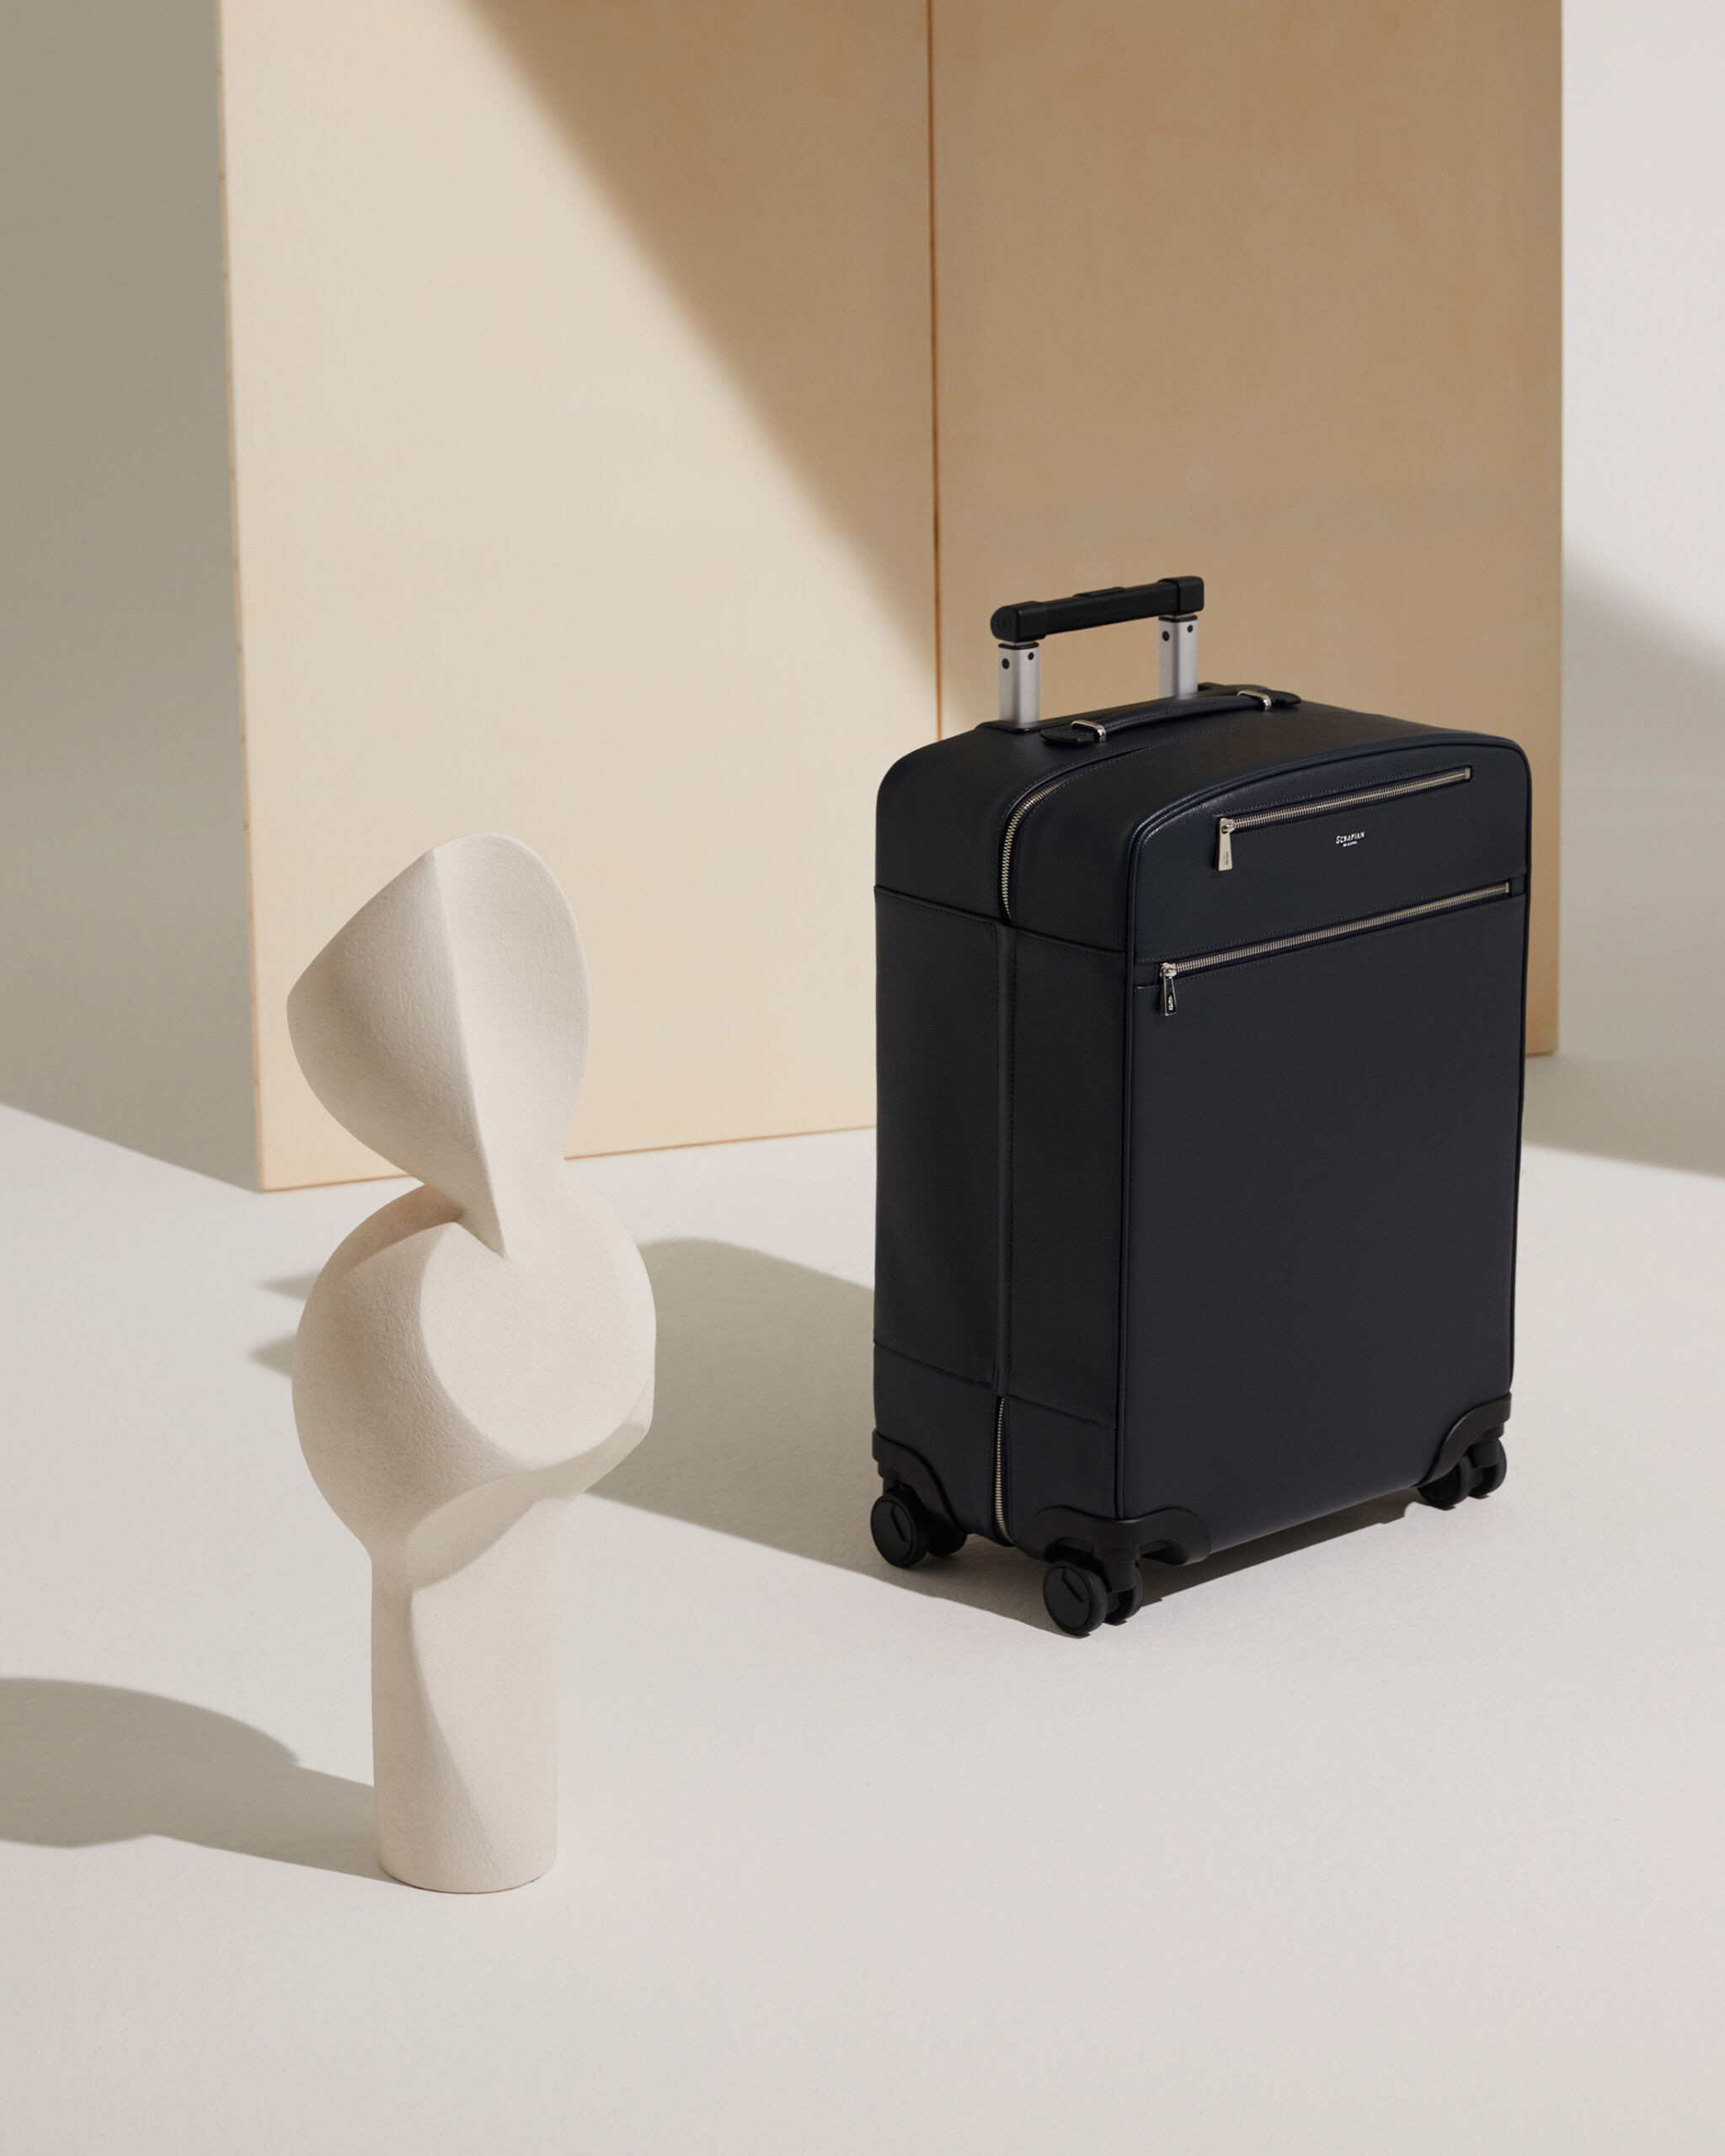 Ein schwarzer Koffer neben einer weißen Skulptur